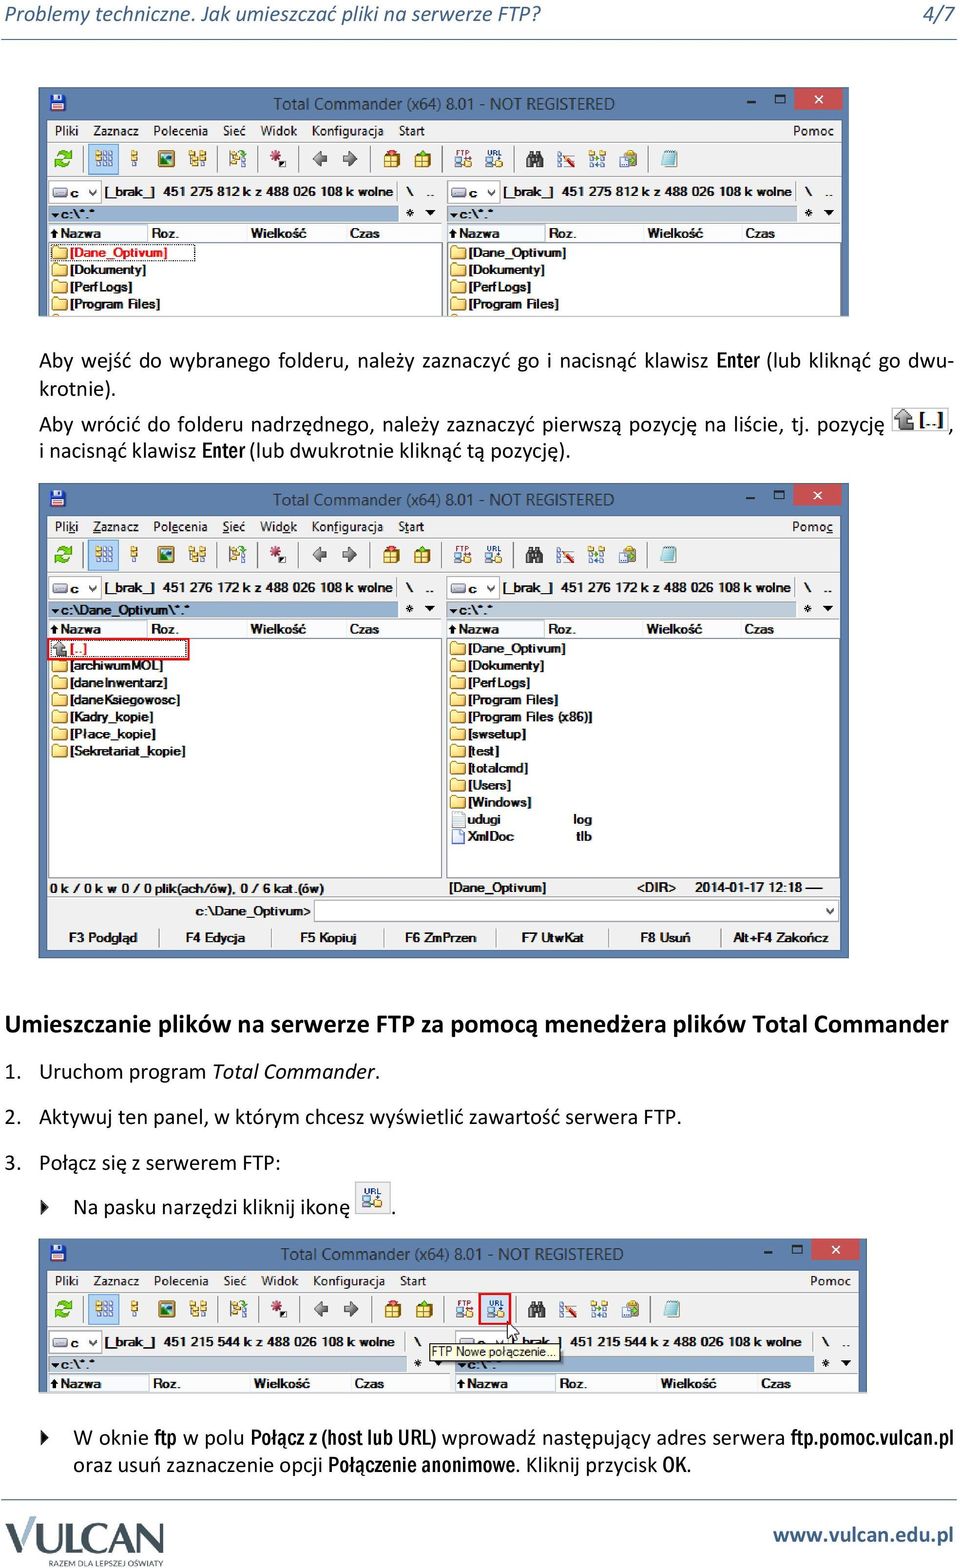 Umieszczanie plików na serwerze FTP za pomocą menedżera plików Total Commander 1. Uruchom program Total Commander. 2. Aktywuj ten panel, w którym chcesz wyświetlić zawartość serwera FTP.